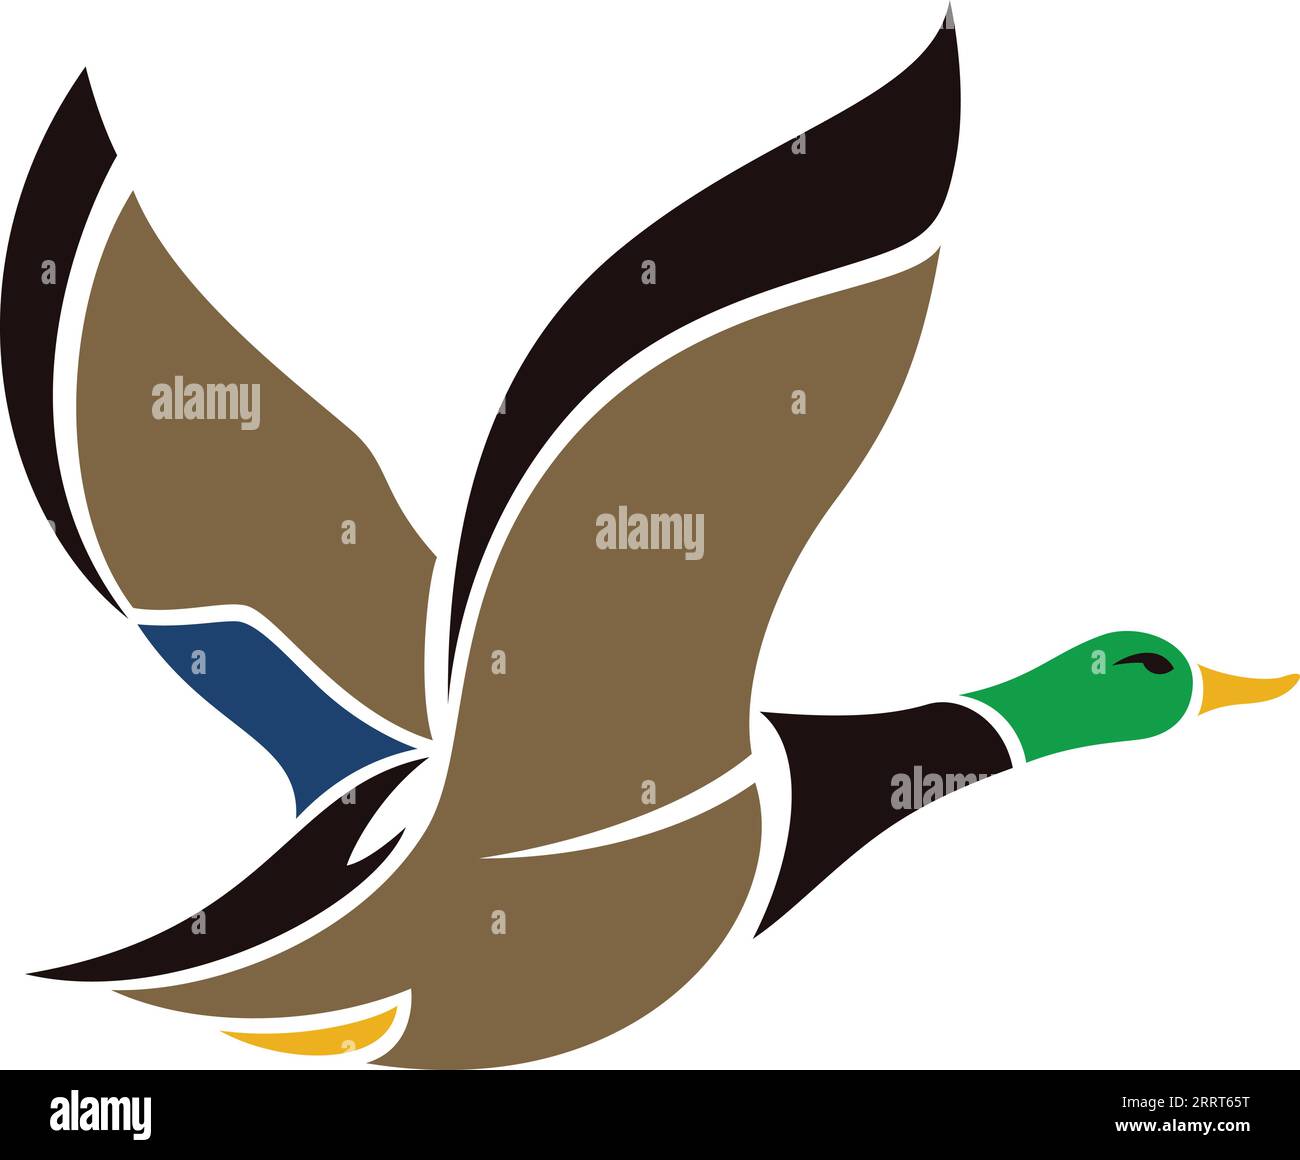 Drake Mallard Duck Flying Illustration Stock Vector